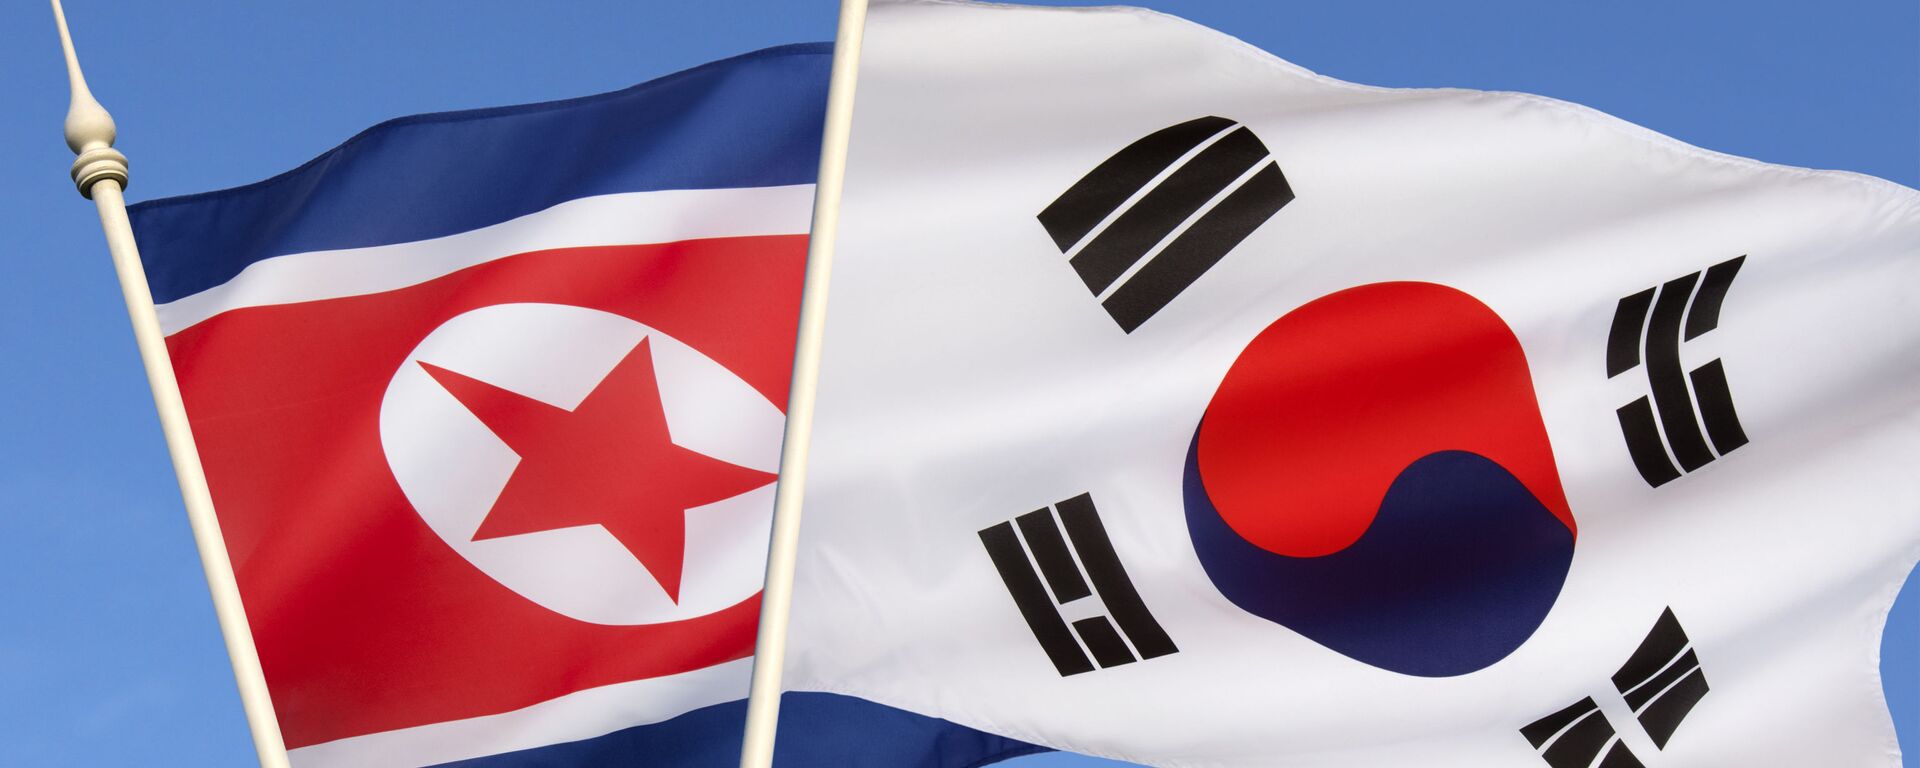 北朝鮮と韓国の国旗 - Sputnik 日本, 1920, 30.08.2021